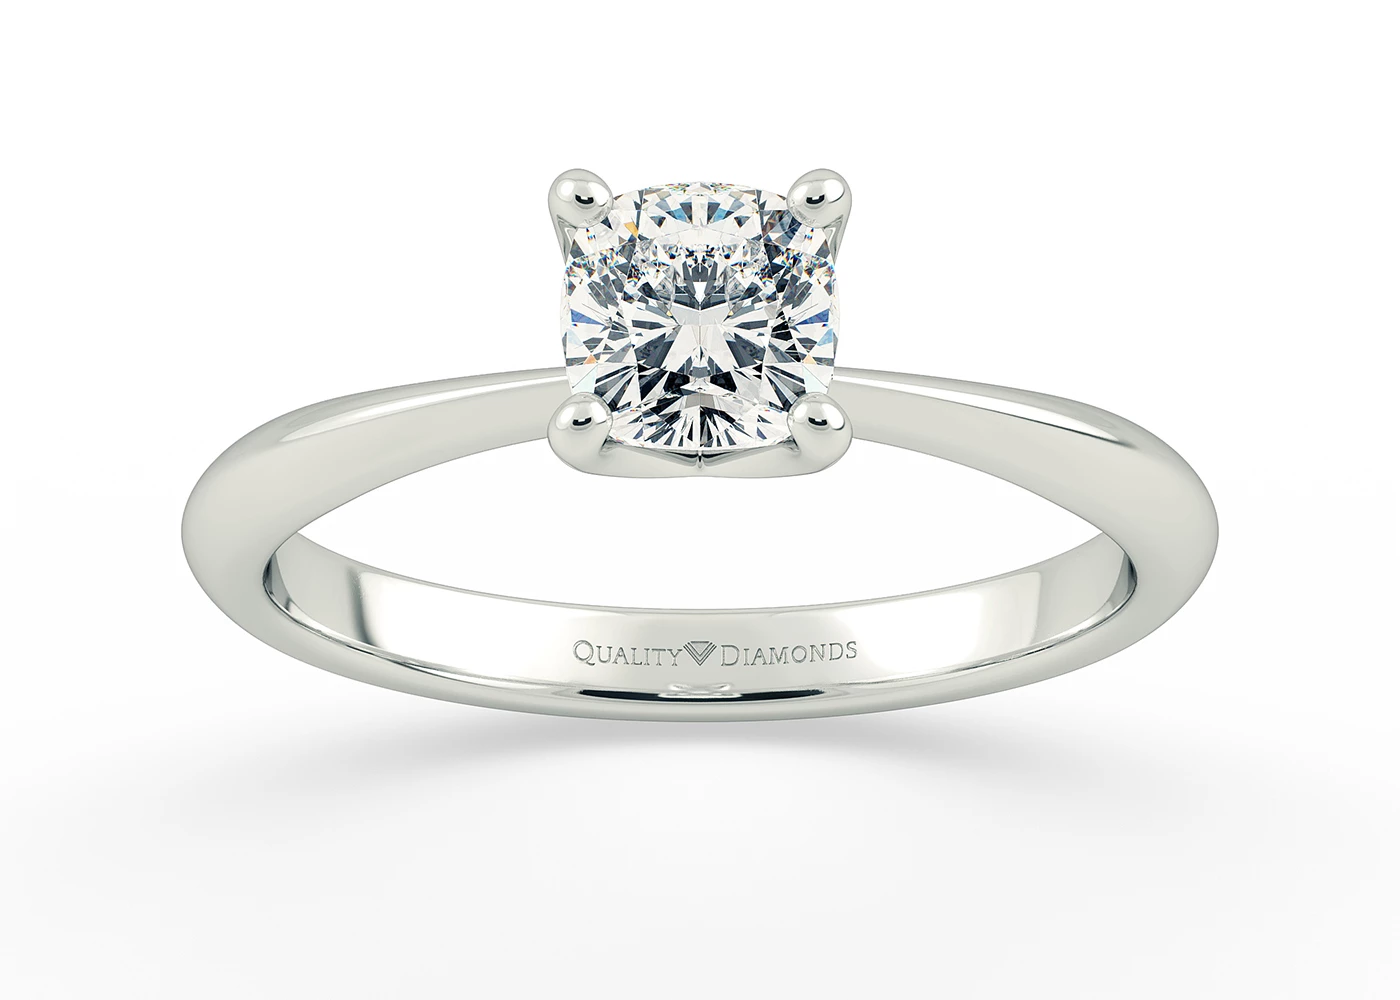 Half Carat Cushion Solitaire Diamond Engagement Ring in Platinum 950